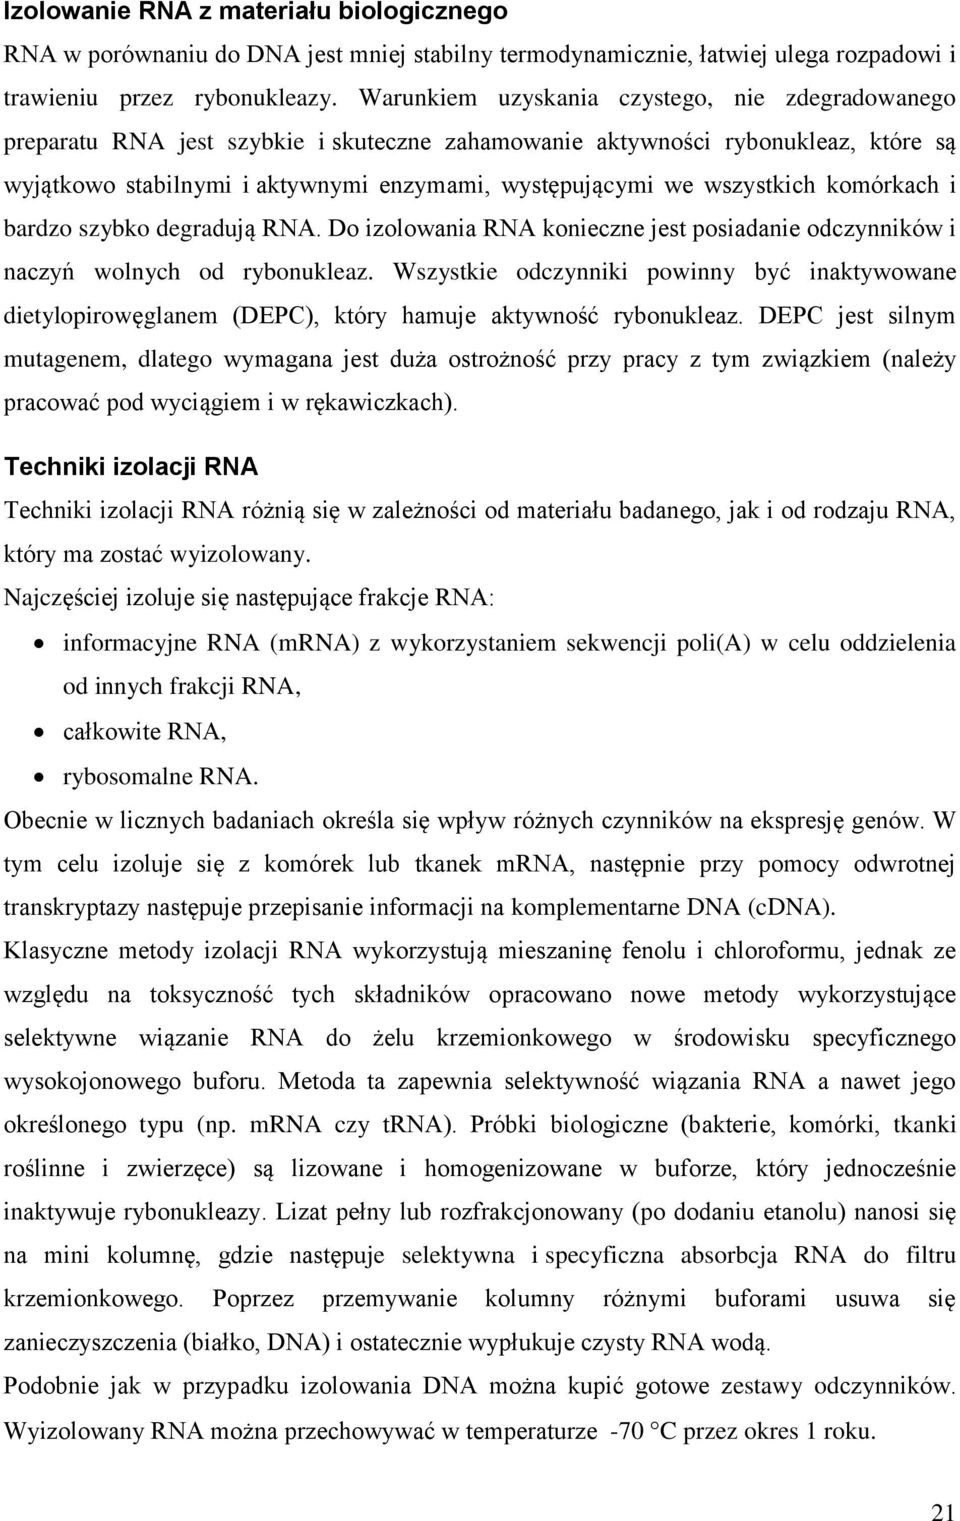 wszystkich komórkach i bardzo szybko degradują RNA. Do izolowania RNA konieczne jest posiadanie odczynników i naczyń wolnych od rybonukleaz.